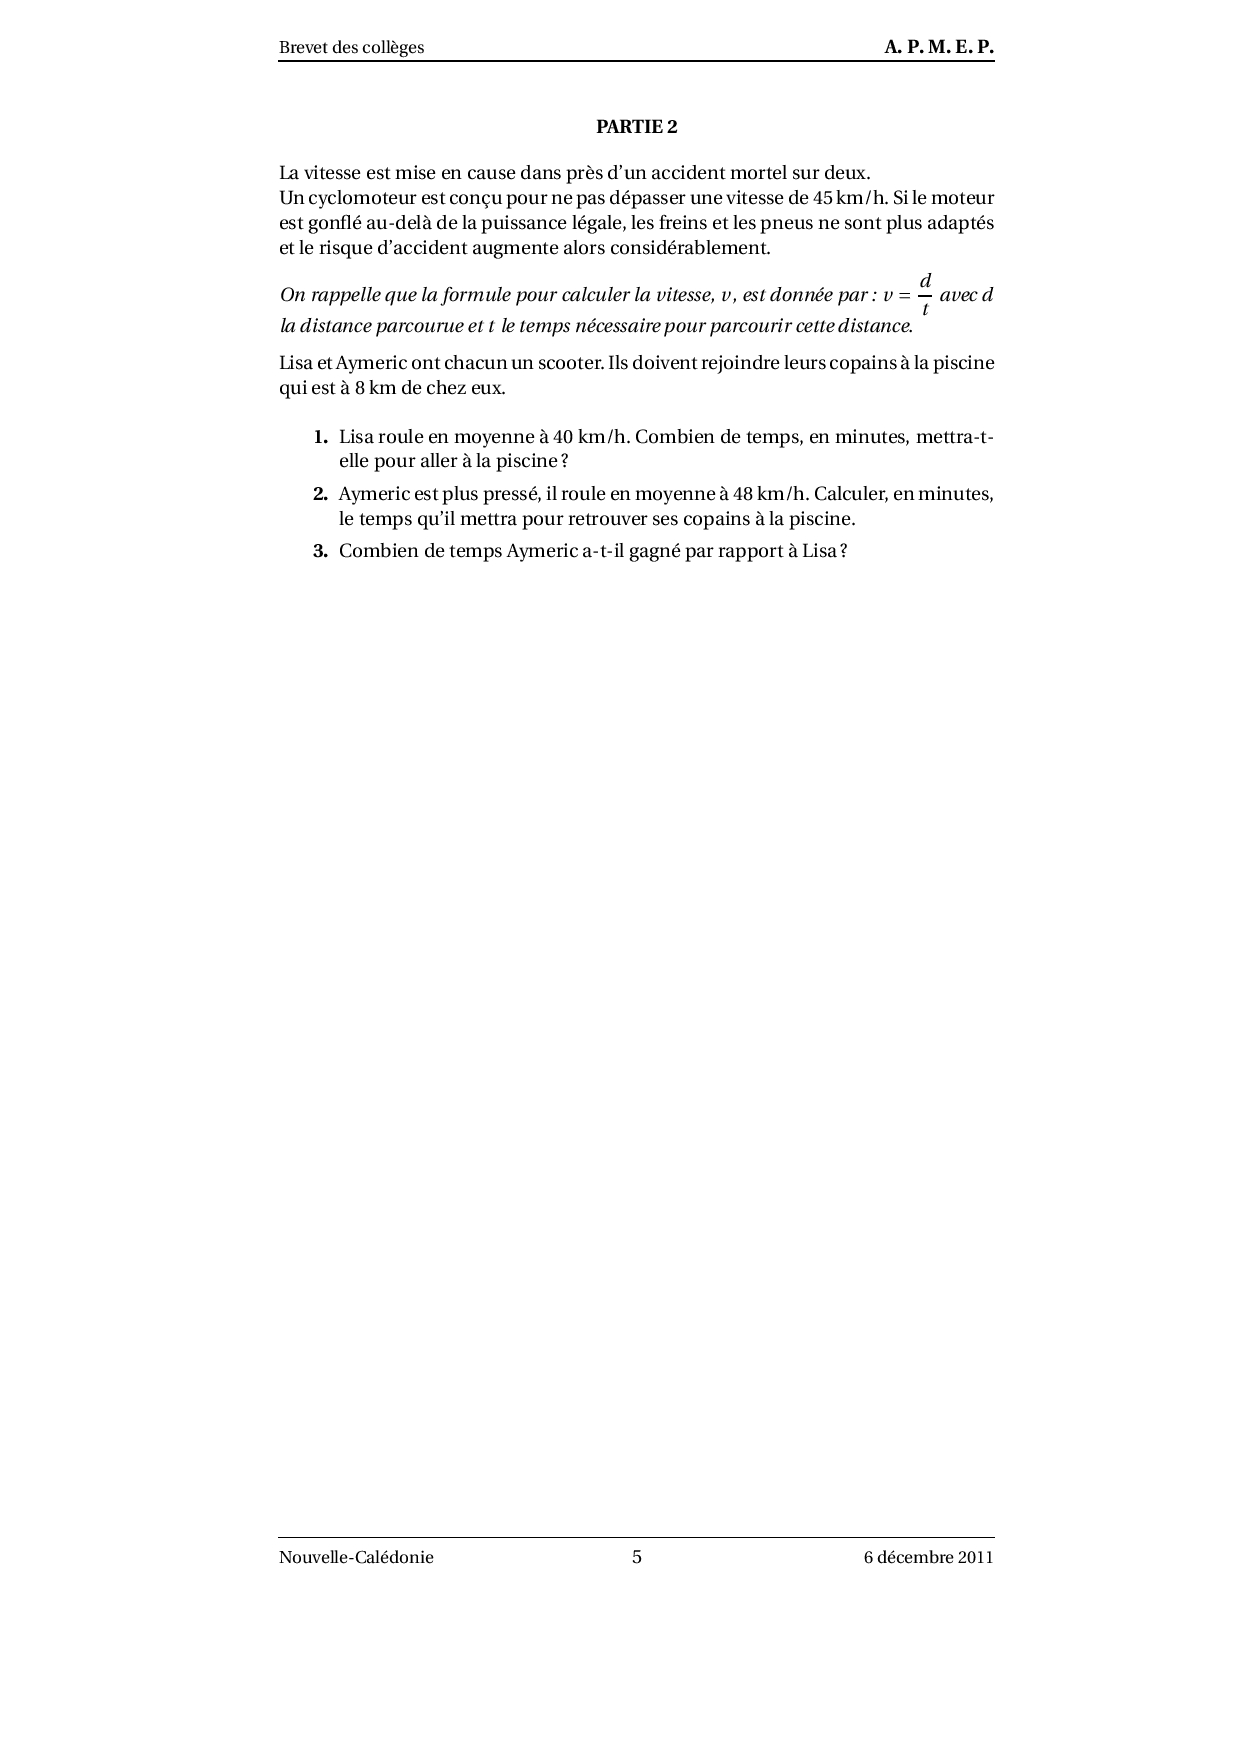 Brevet Maths Nouvelle-Calédonie décembre 2011 - Sujet - AlloSchool